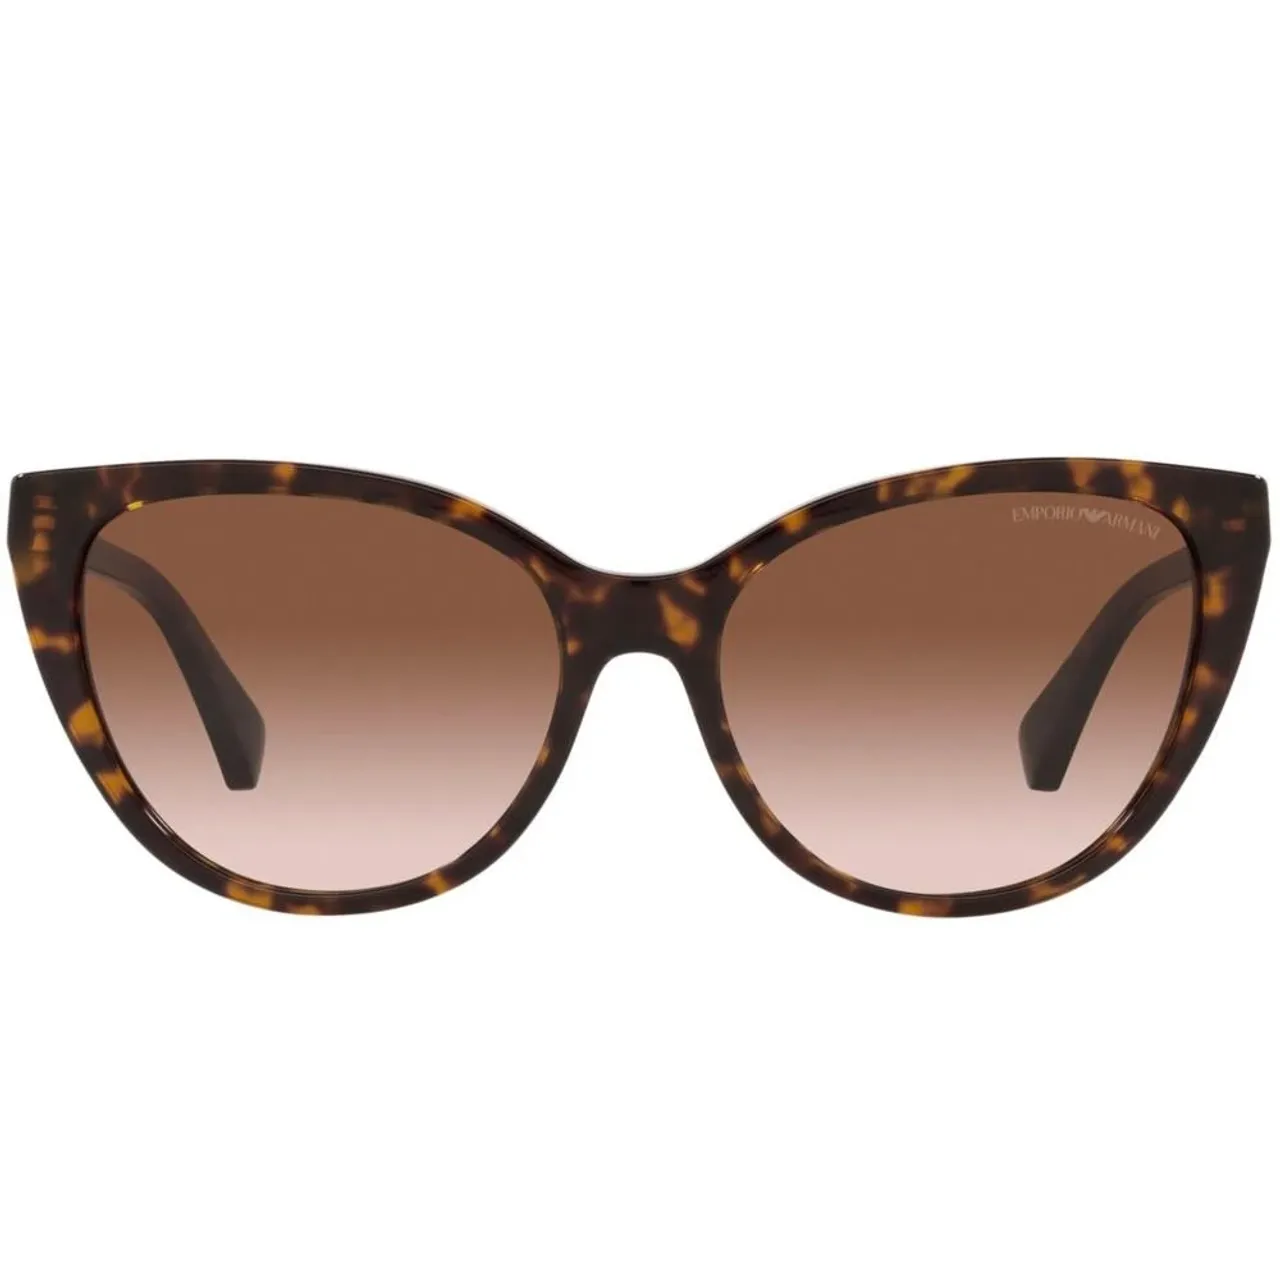 Emporio Armani , Sunglasses EA 4162 ,Brown female, Sizes: